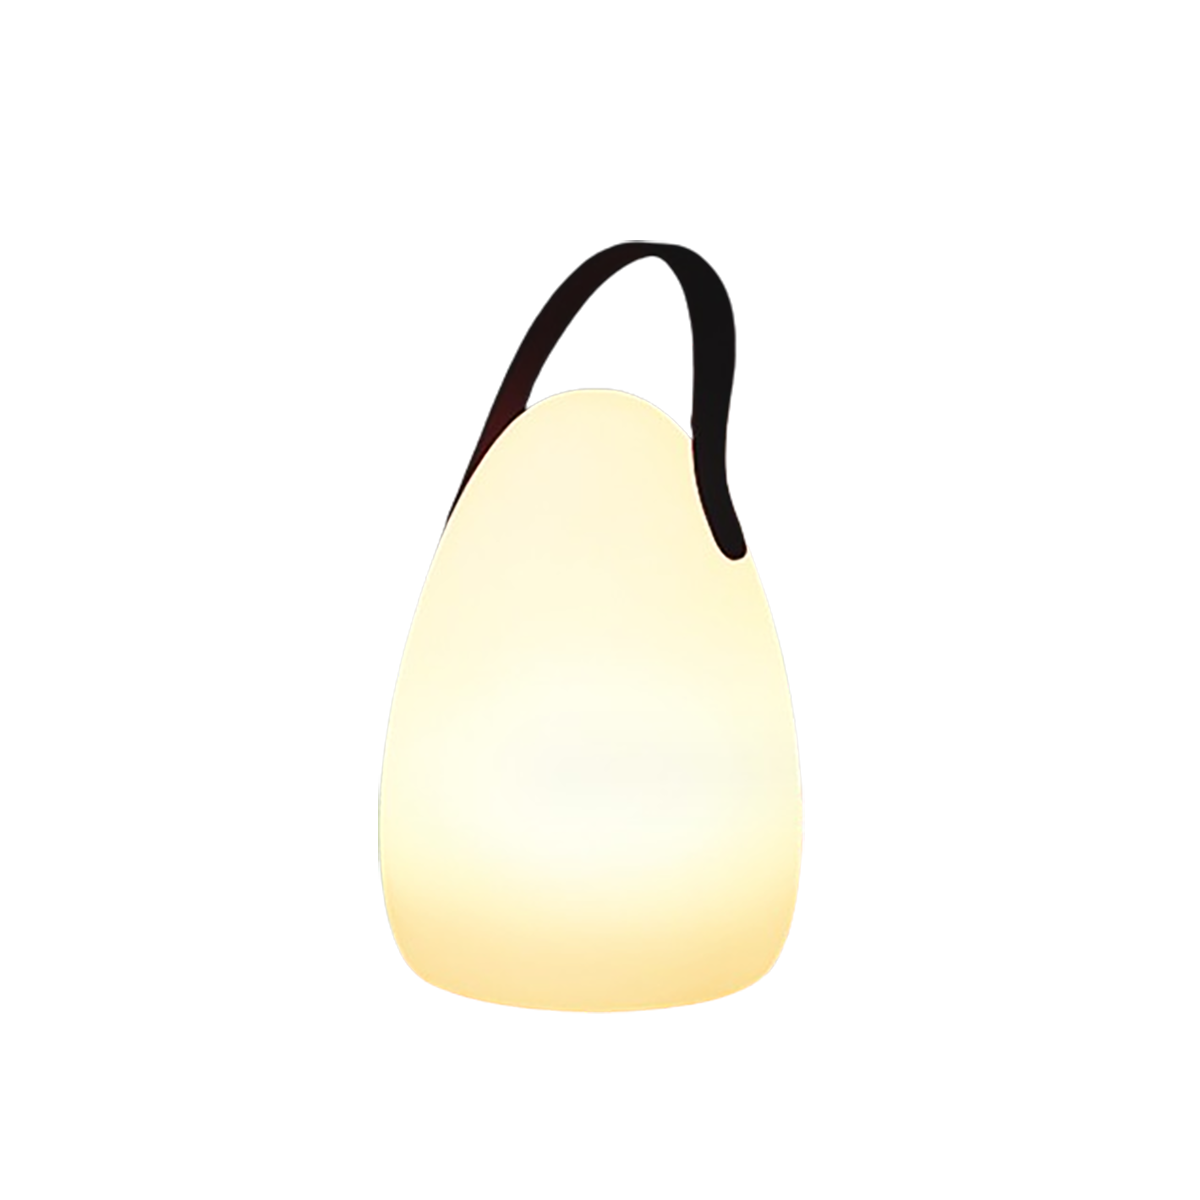 Lichtquelle, Eiförmige Tragbare Dekoration BYTELIKE - Tischlampe Augenschonende Beleuchtung 16 Fernbedienungsschalter, Lichtfarben